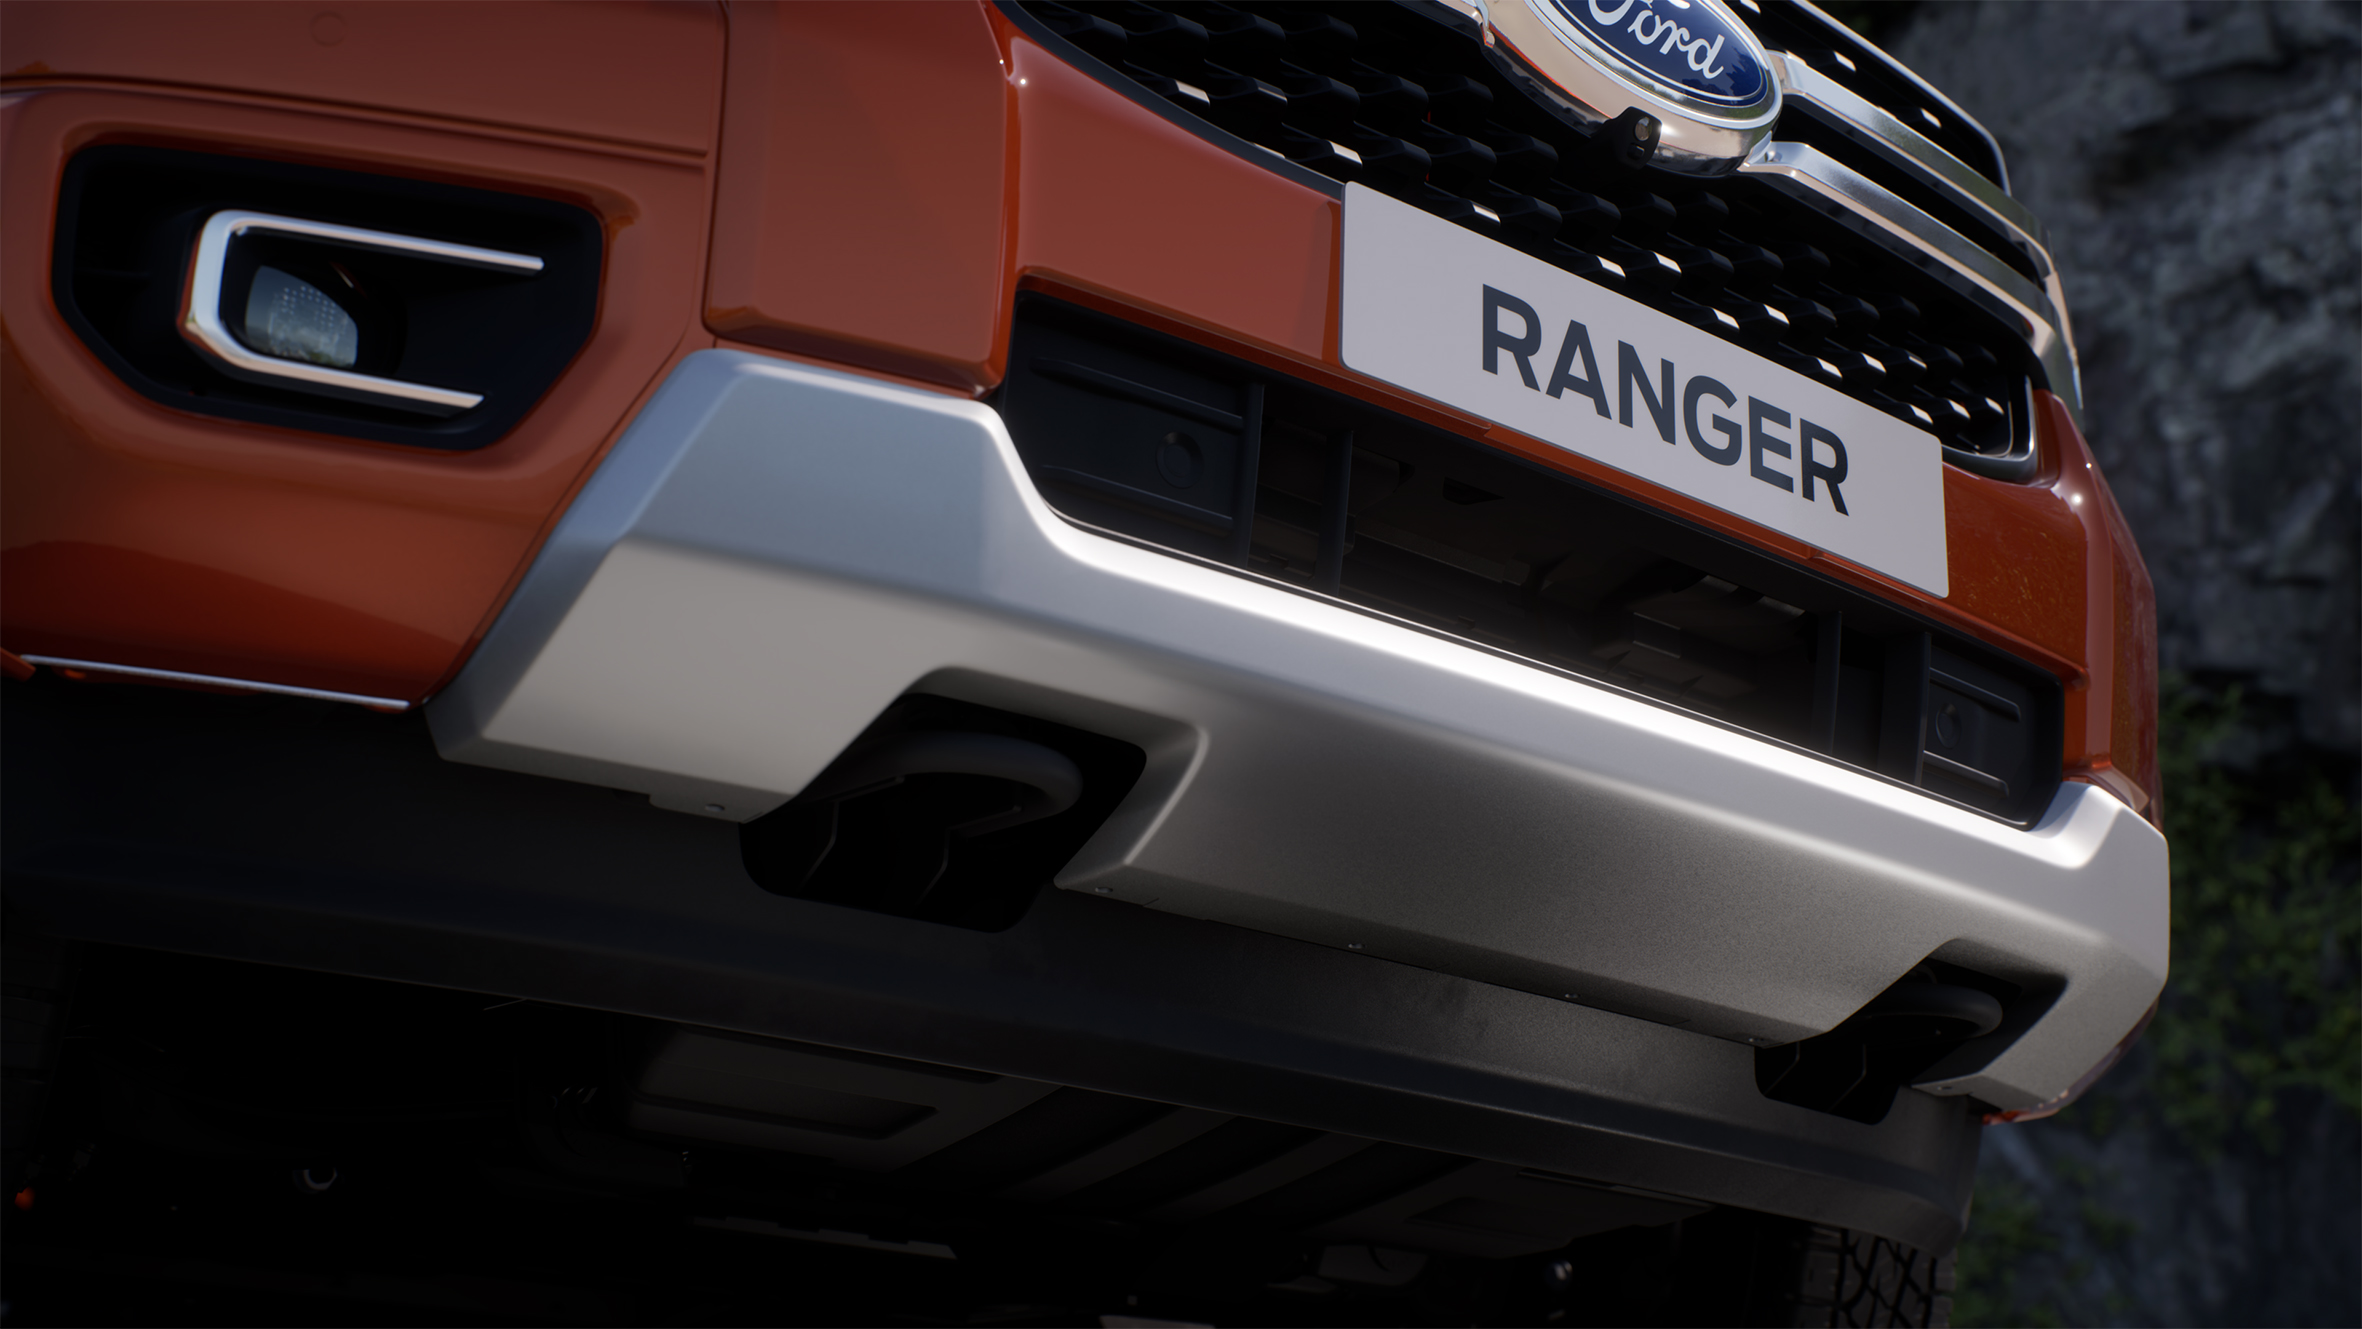 Ford Ranger. Foto: Divulgação